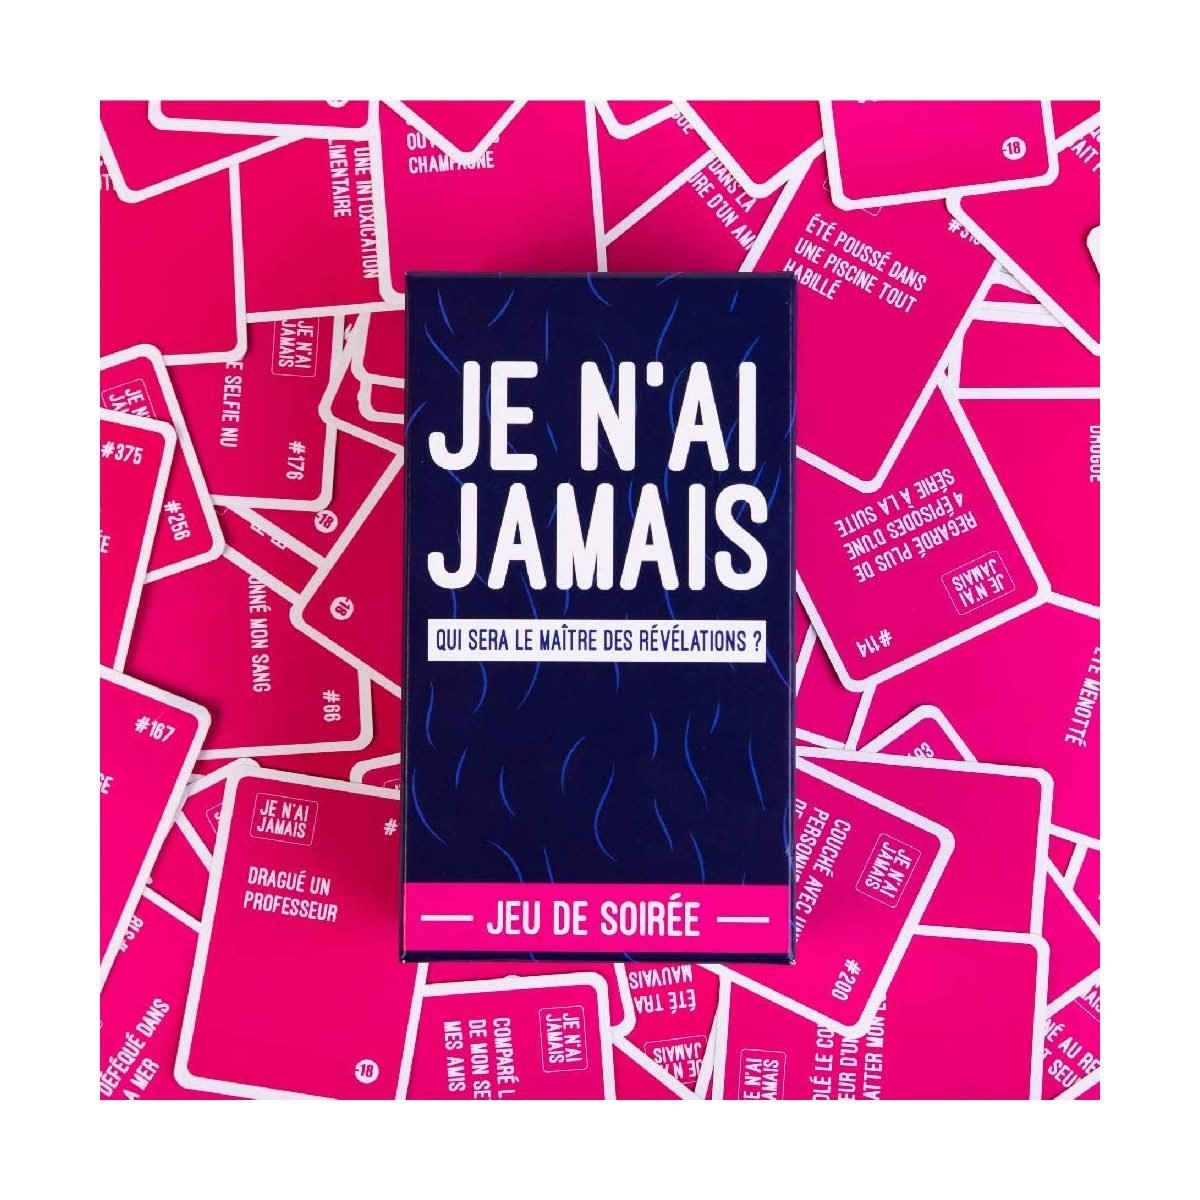 Je n'ai JAMAIS - Le Jeu des Révélations Entre Amis - Jeu De